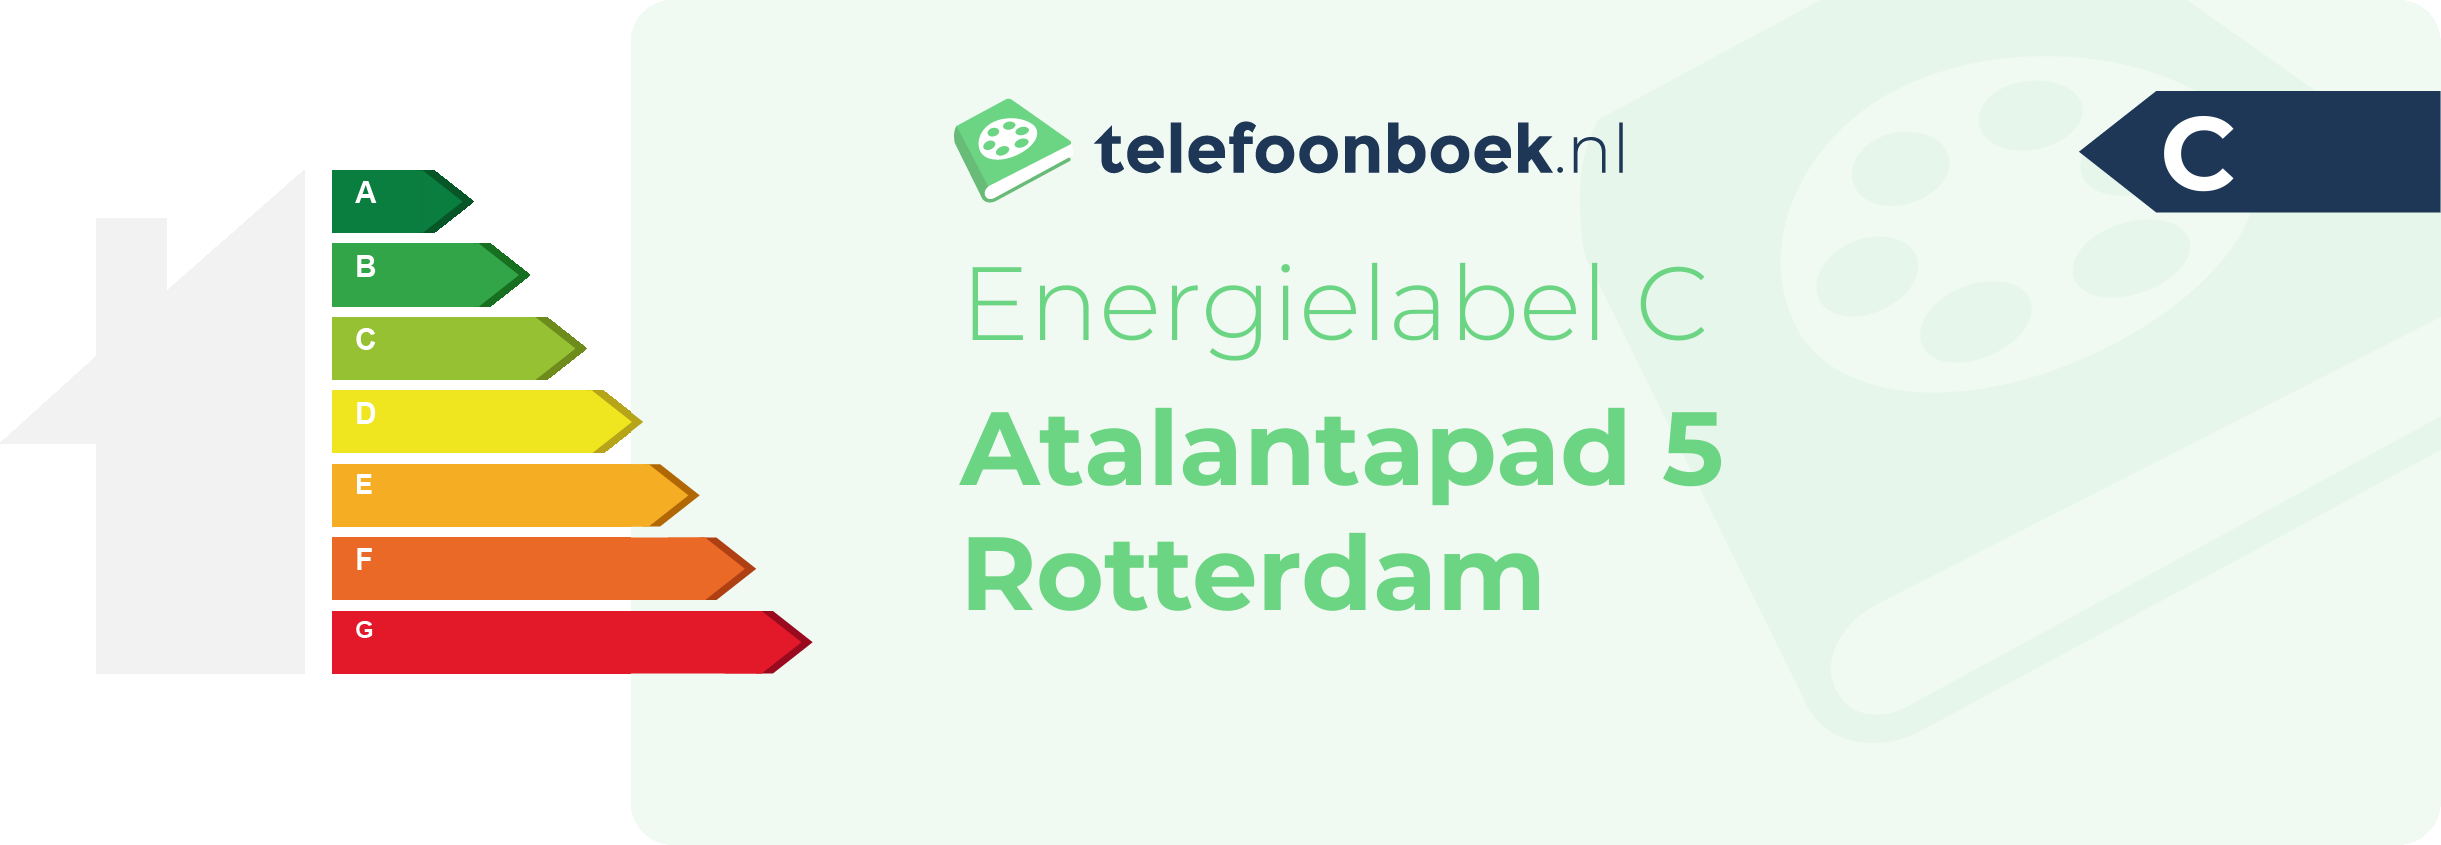 Energielabel Atalantapad 5 Rotterdam